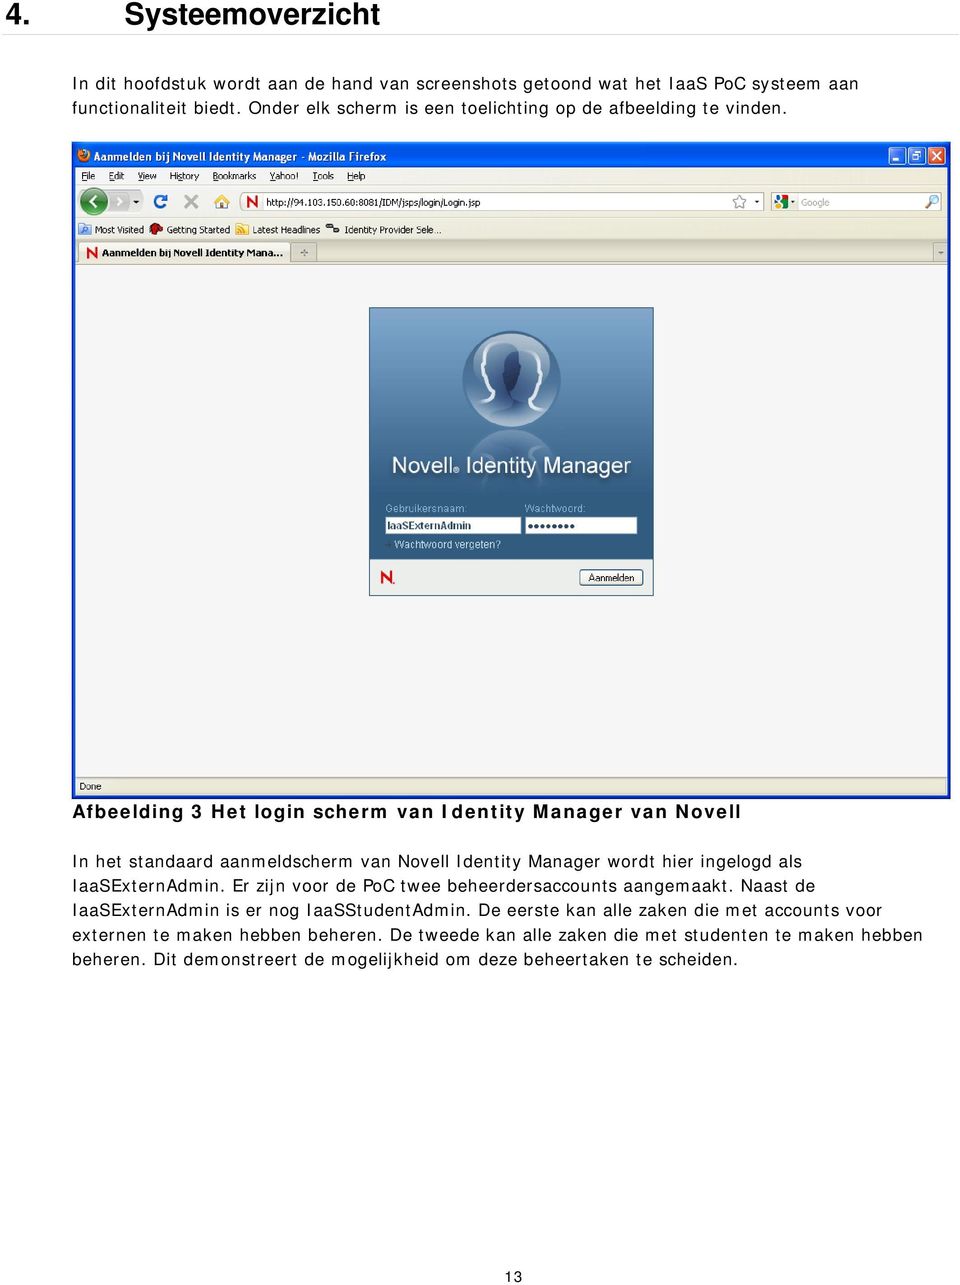 Afbeelding 3 Het login scherm van Identity Manager van Novell In het standaard aanmeldscherm van Novell Identity Manager wordt hier ingelogd als IaaSExternAdmin.